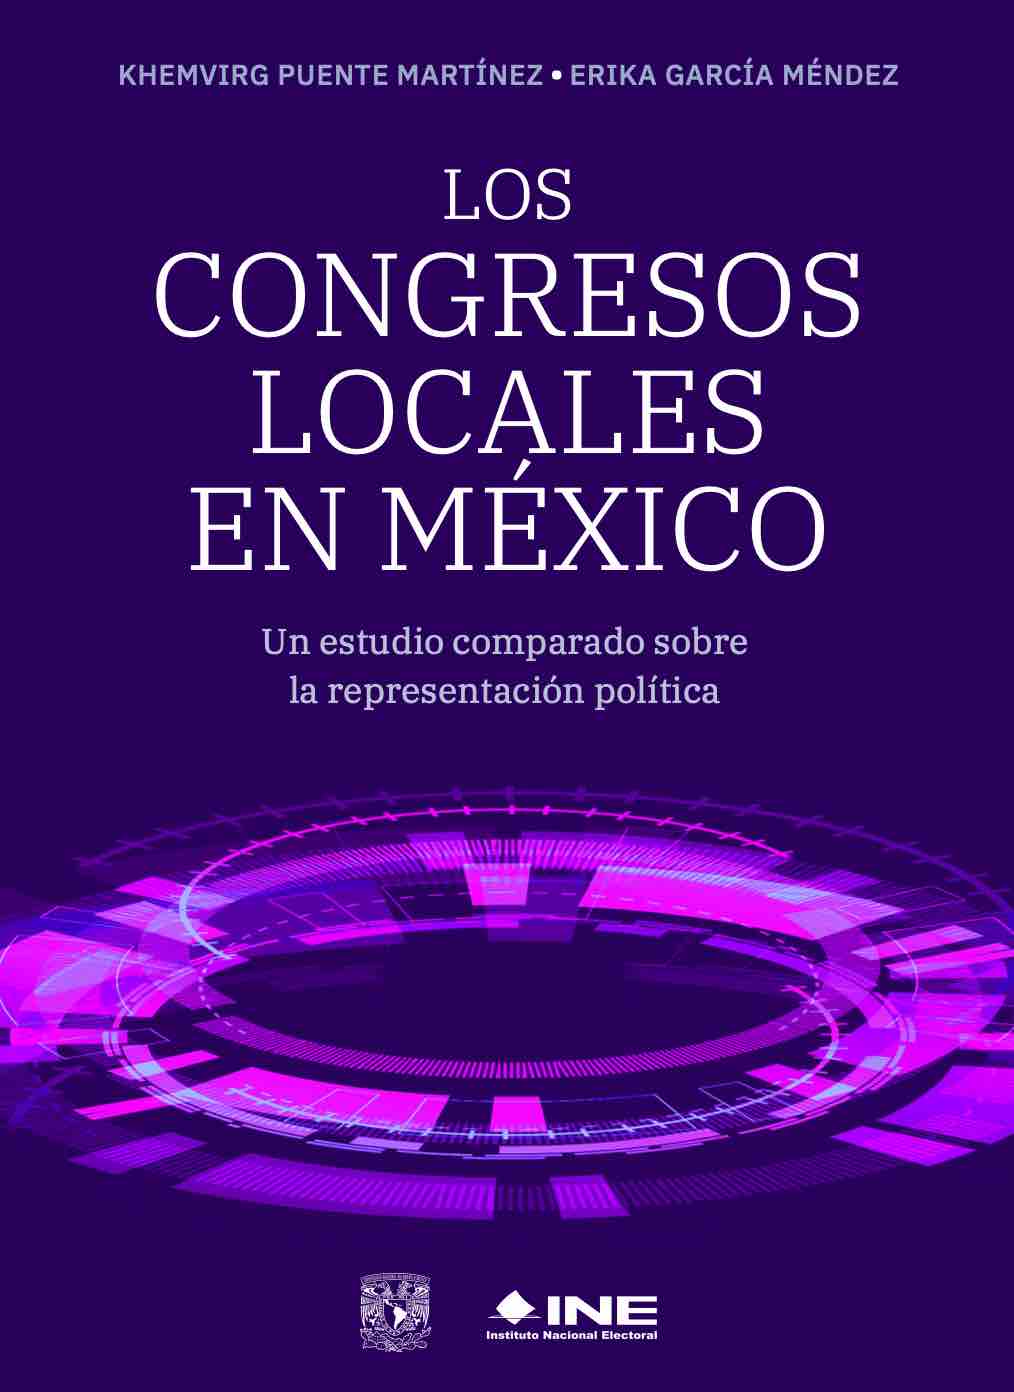 Los congresos locales en México. Un estudio comparado sobre la representación política